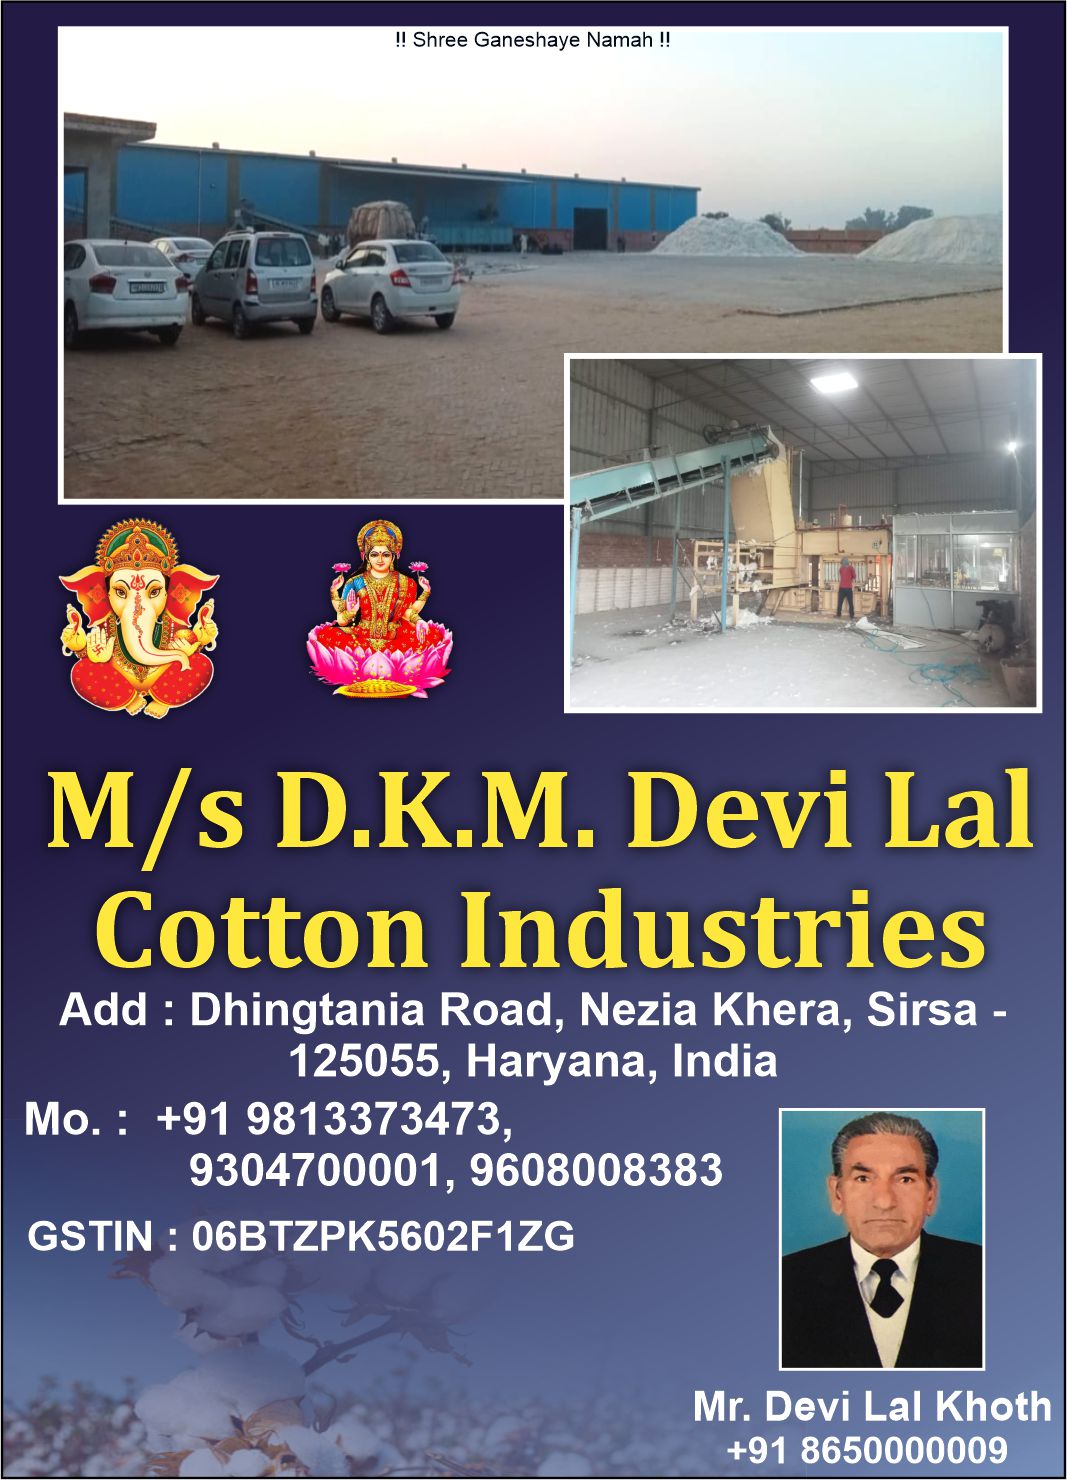 D. K. M. Devi Lal Cotton Industr